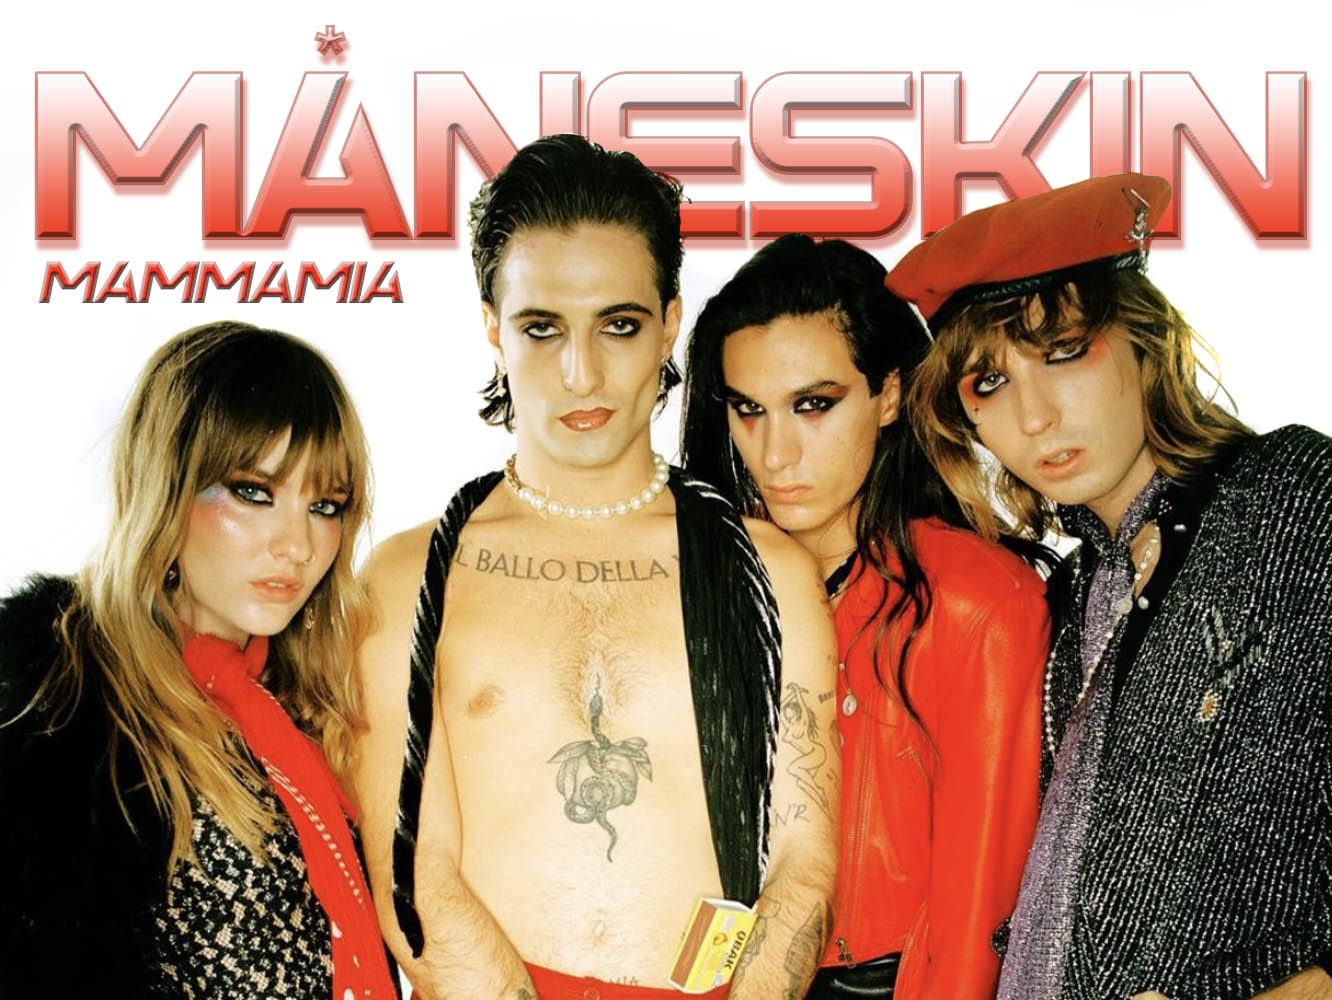  Para desgracia de la radiofórmula española, ‘Mammamia’ de Måneskin no es un cover del clásico de A*Teens